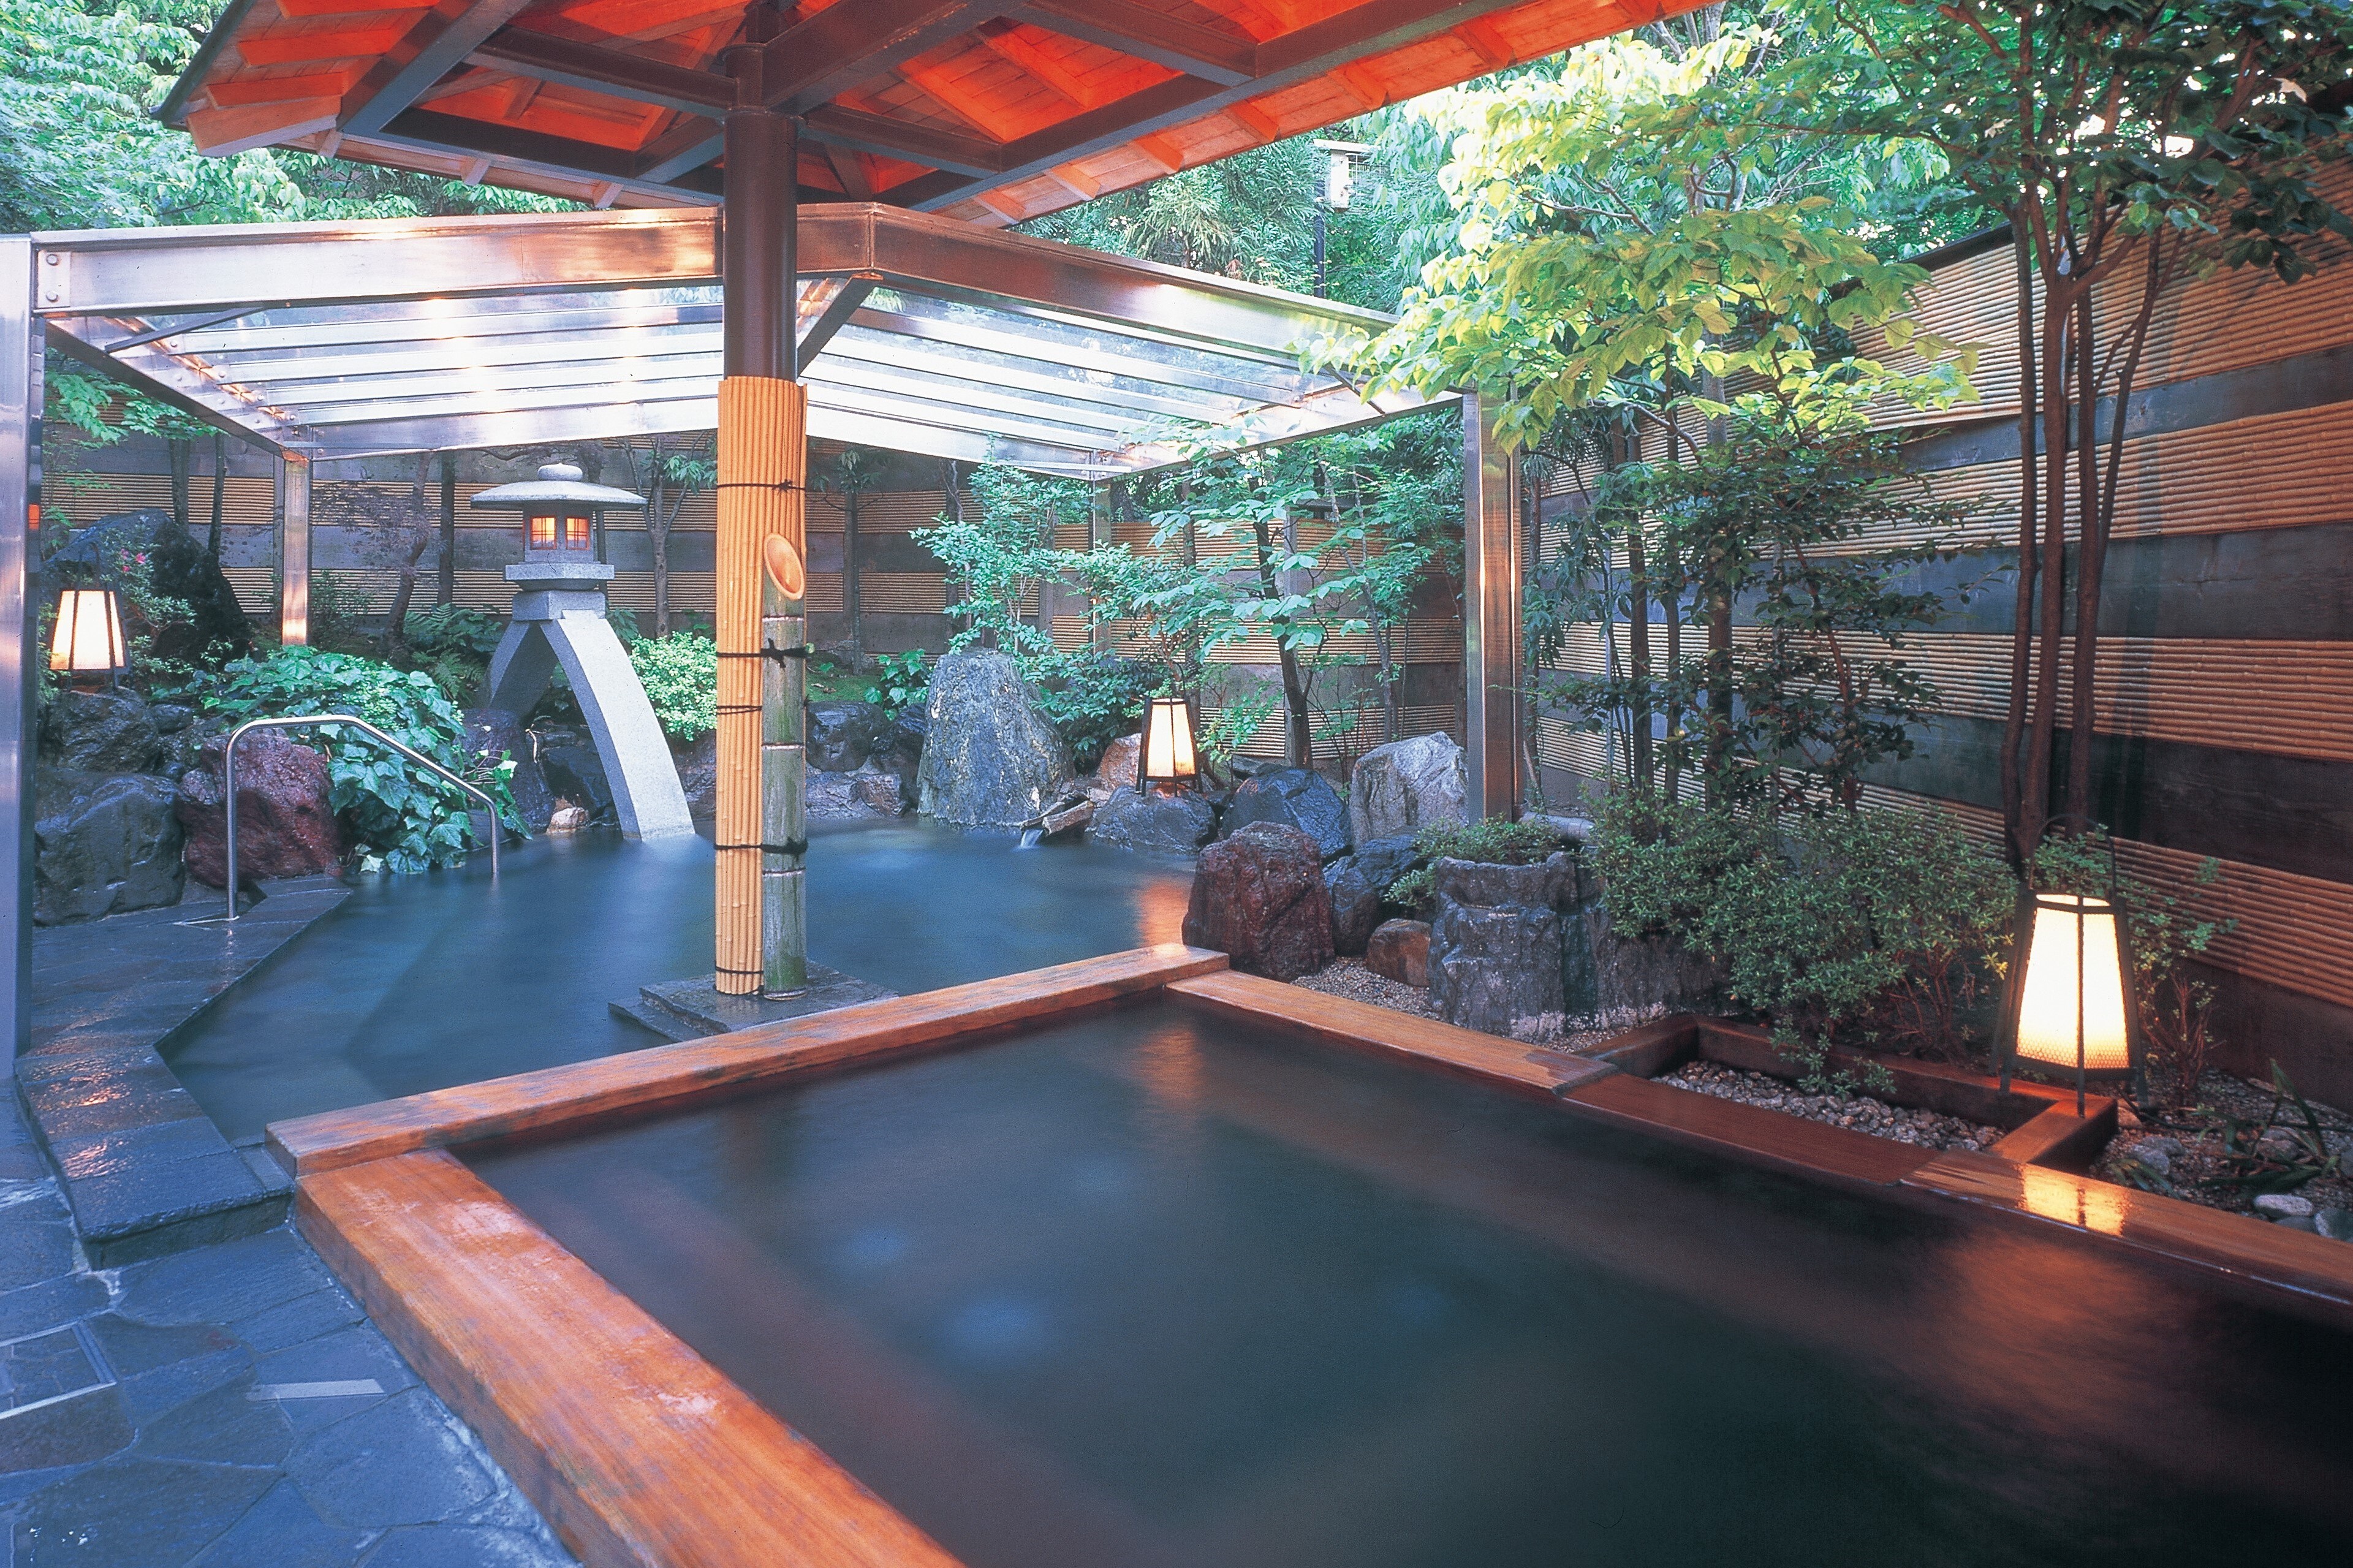 [Open-air bath] Tonokata Garden open-air bath